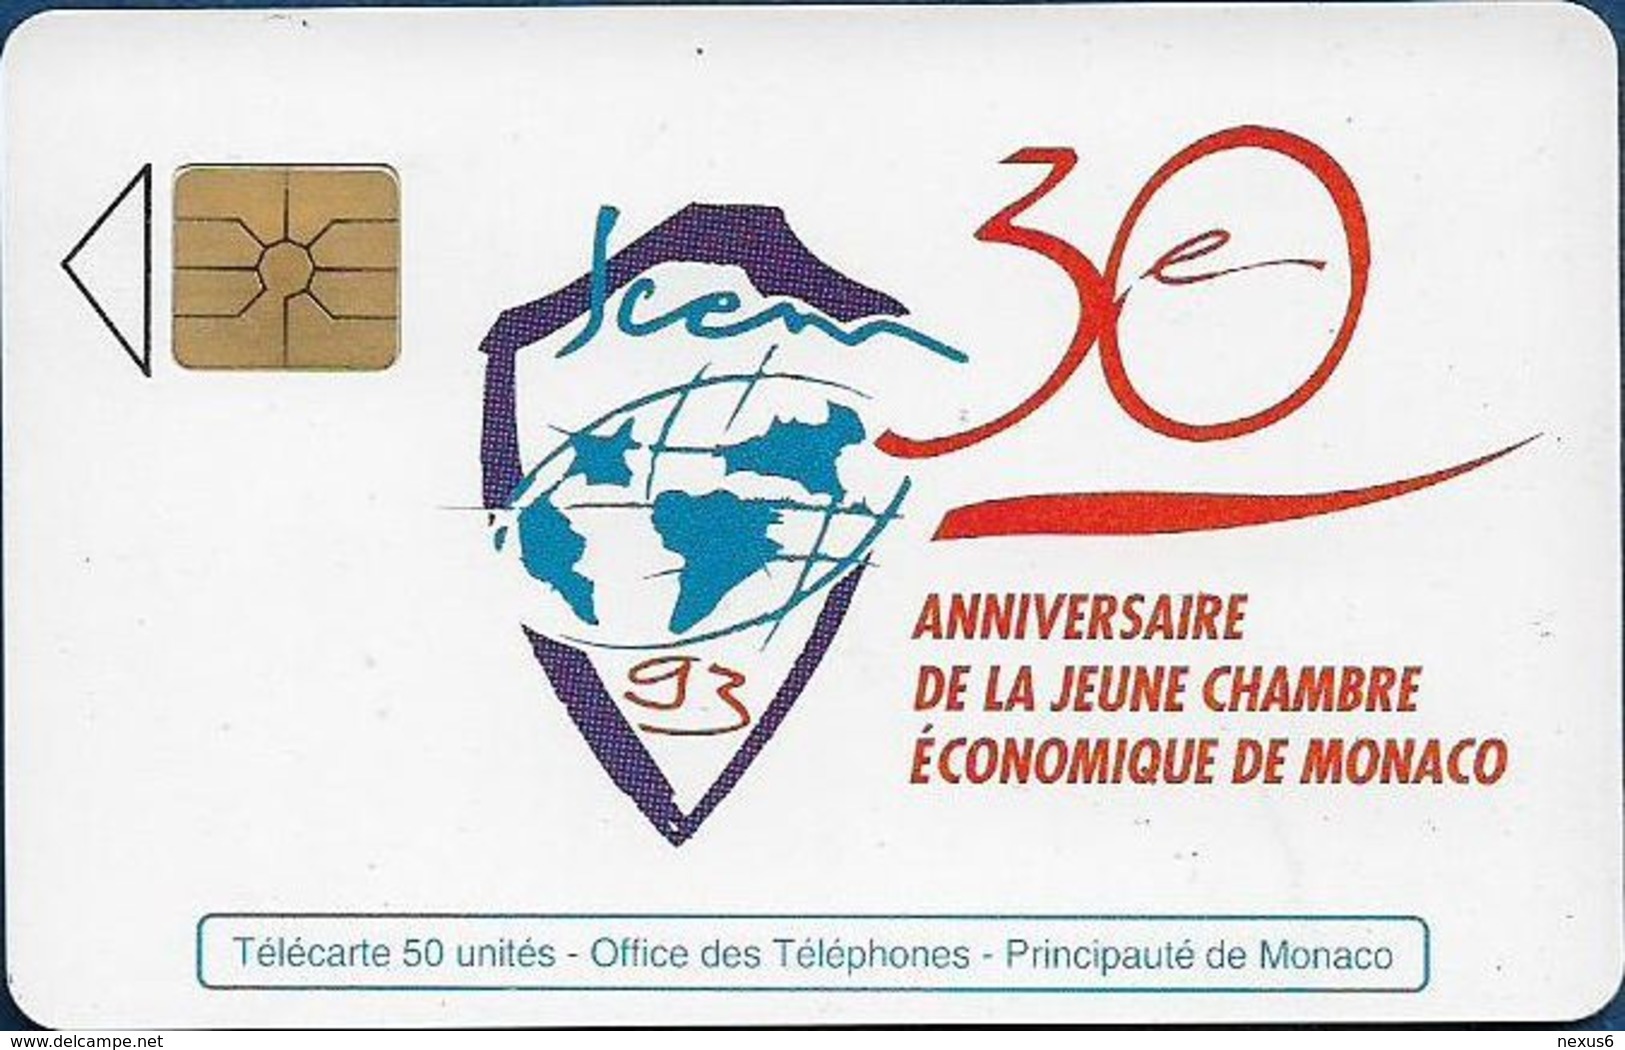 Monaco - MF28 (B) - Chambre Economique - Cn. B3411731 B, Gem1A Symmetr. Black, 05.1993, 50Units, 20.000ex, Used - Monaco